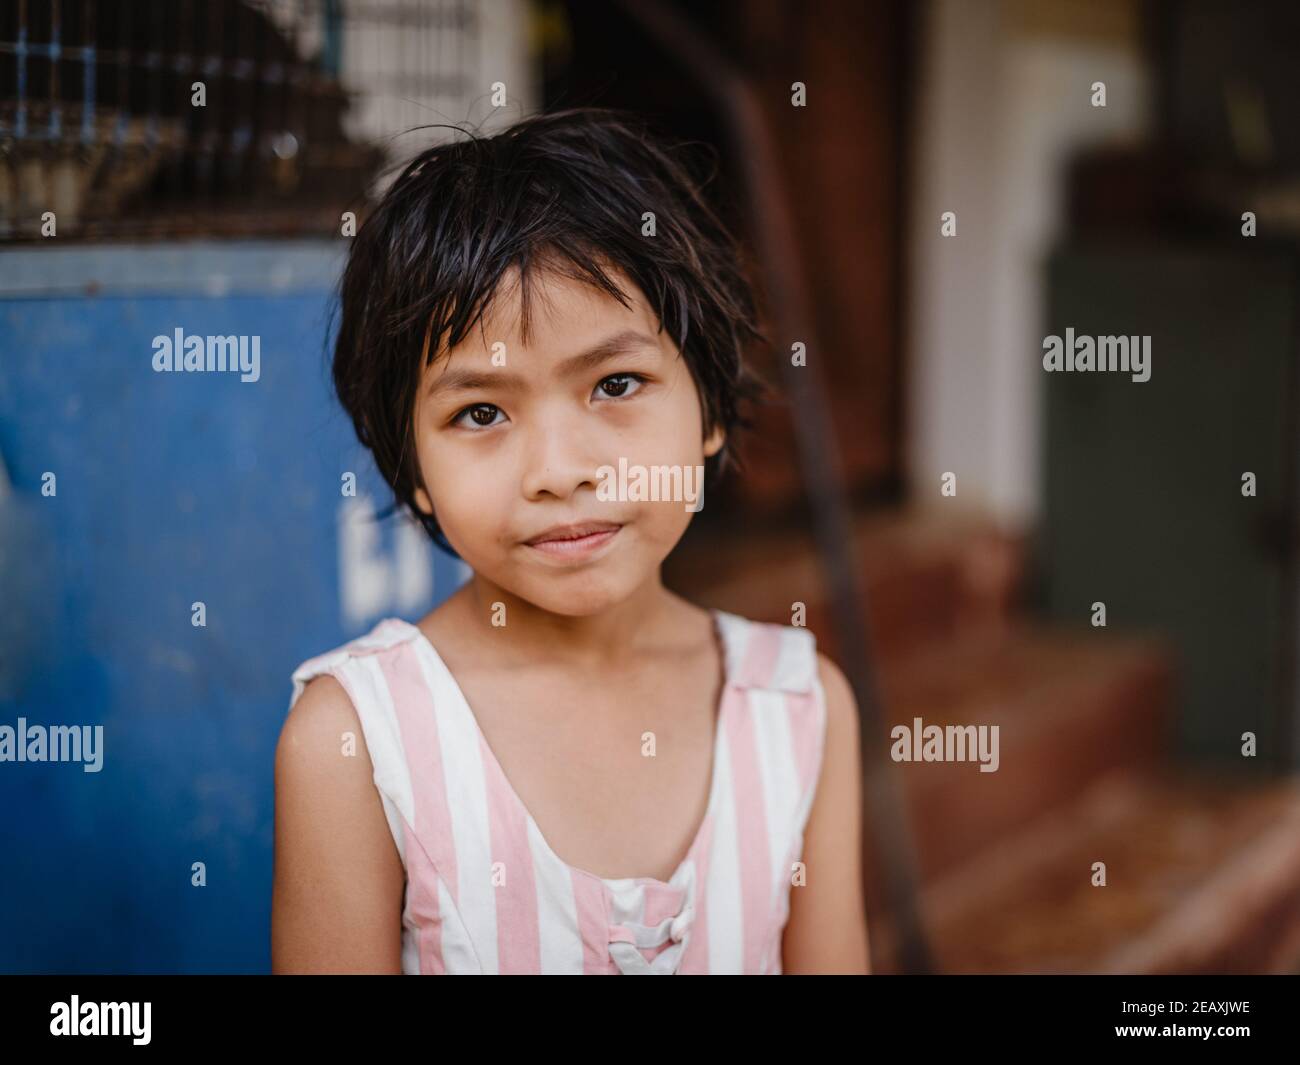 Ritratto di una giovane ragazza tailandese con capelli neri corti, seduta fuori casa, guardando la macchina fotografica. Foto Stock